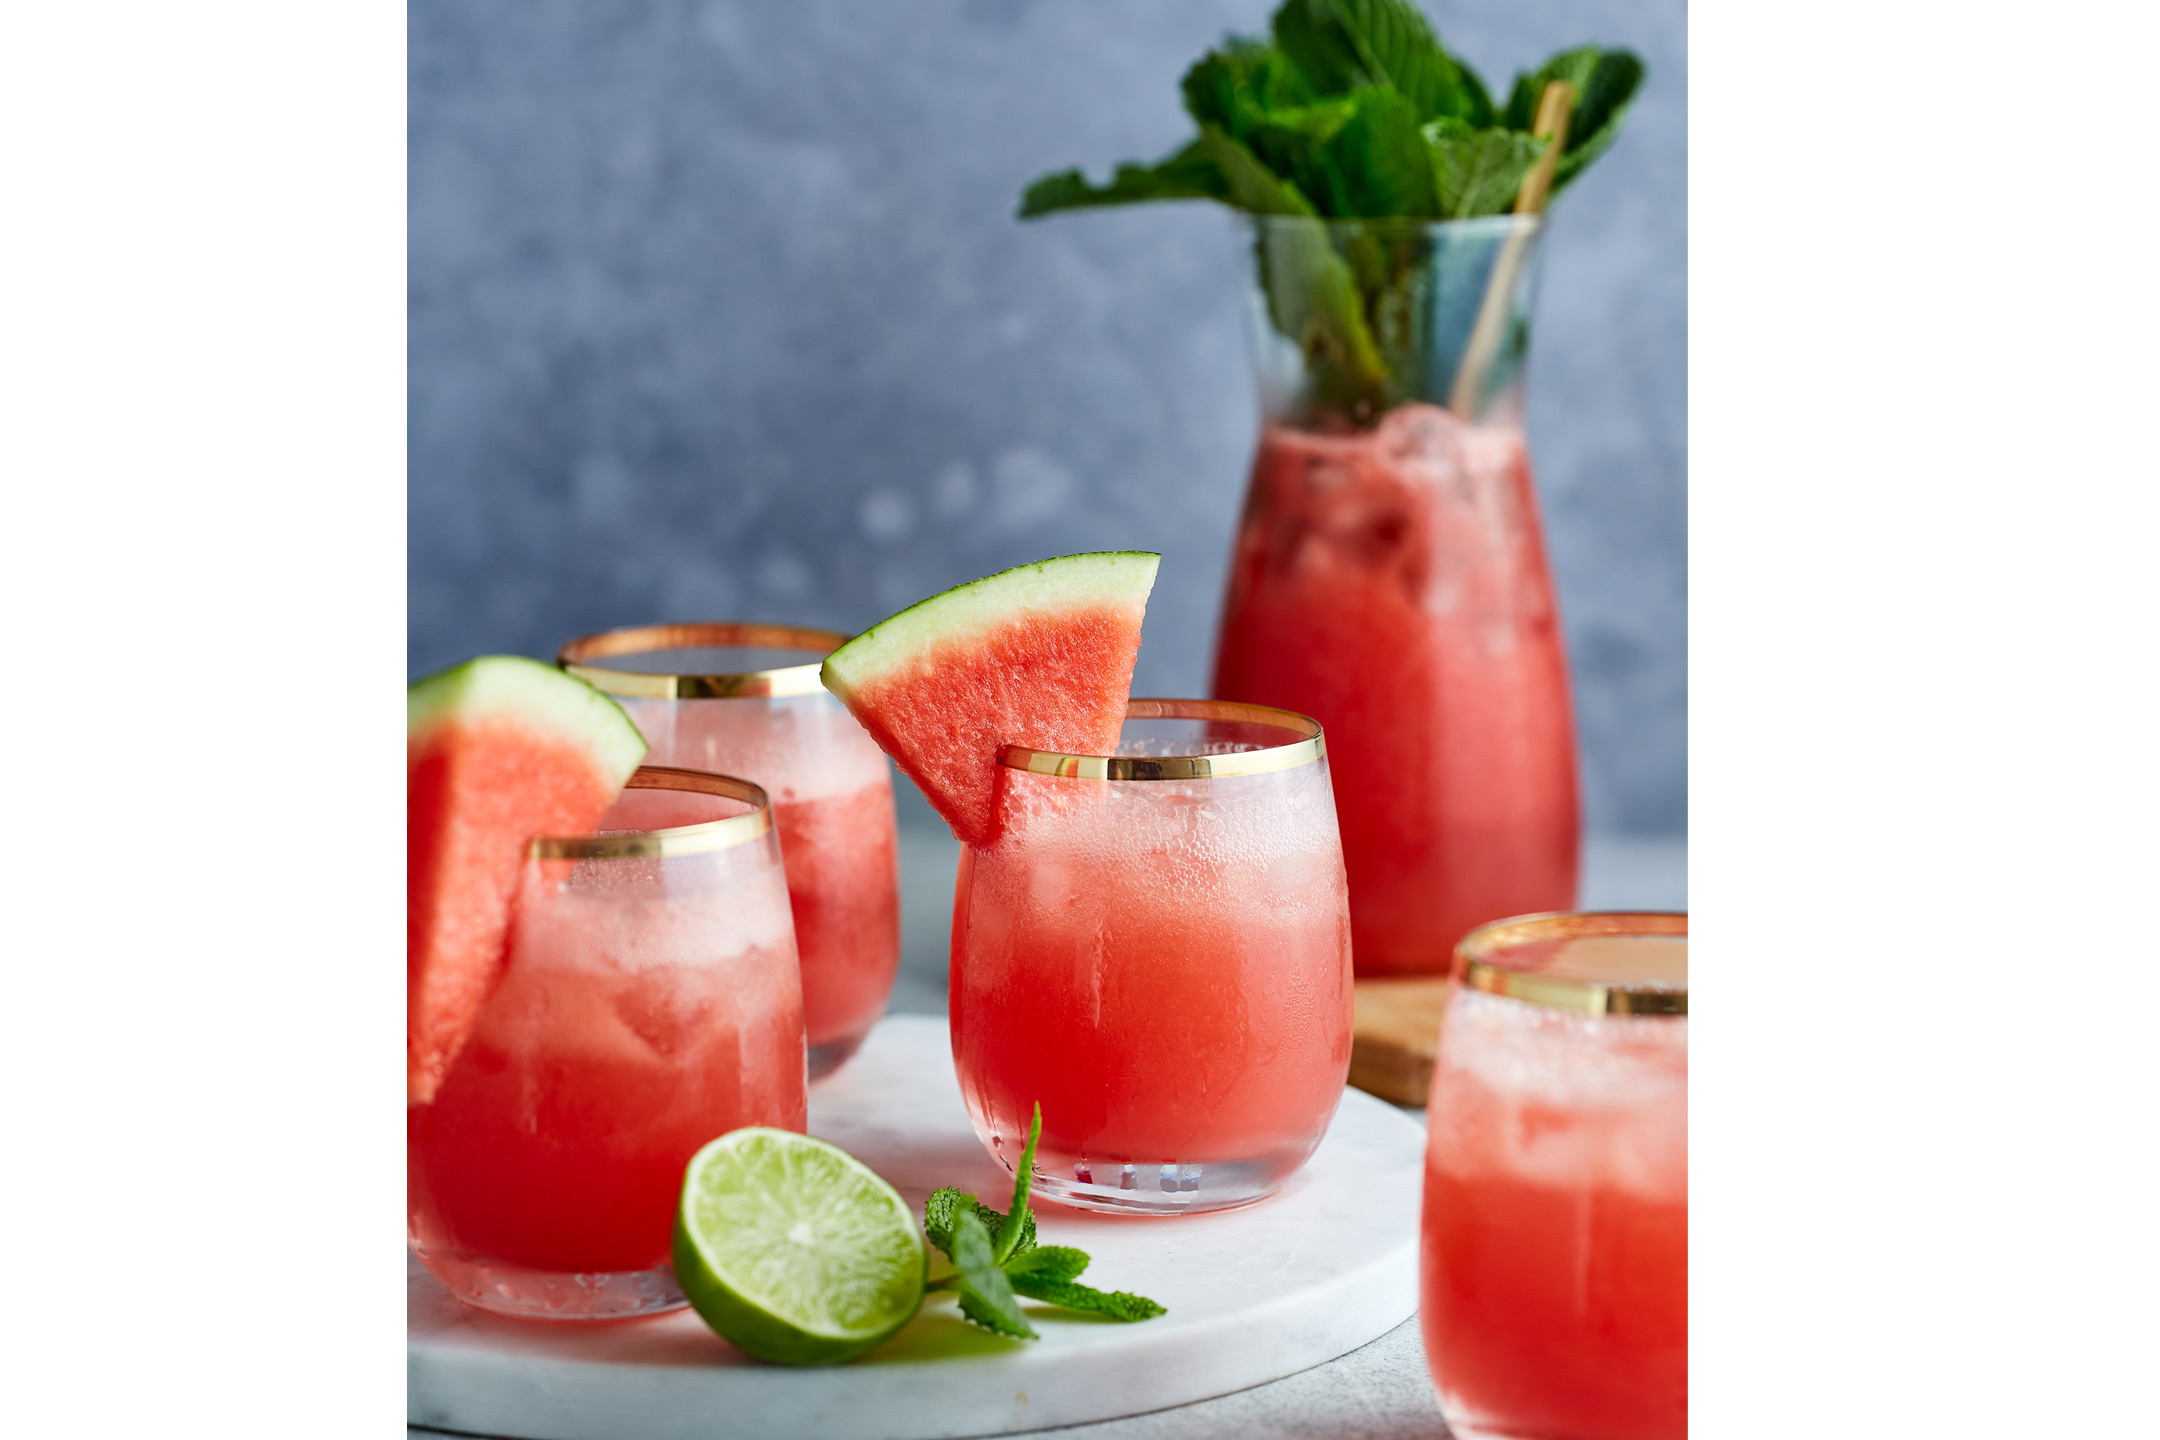 Watermelon-spritz2160